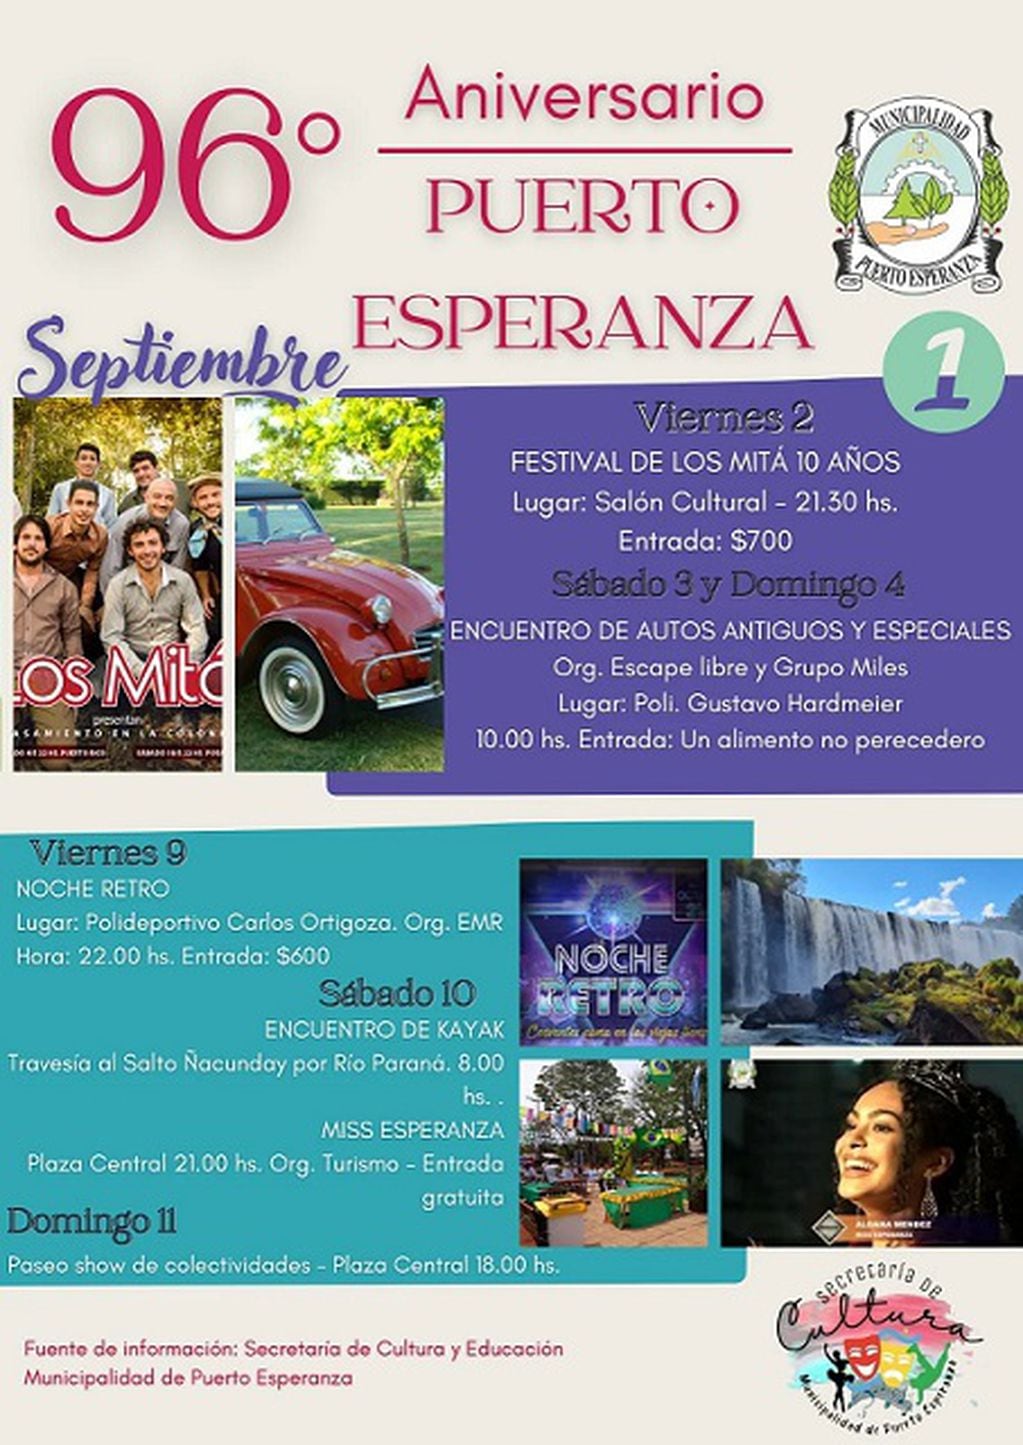 Puerto Esperanza se prepara con actividades para los festejos en su aniversario.